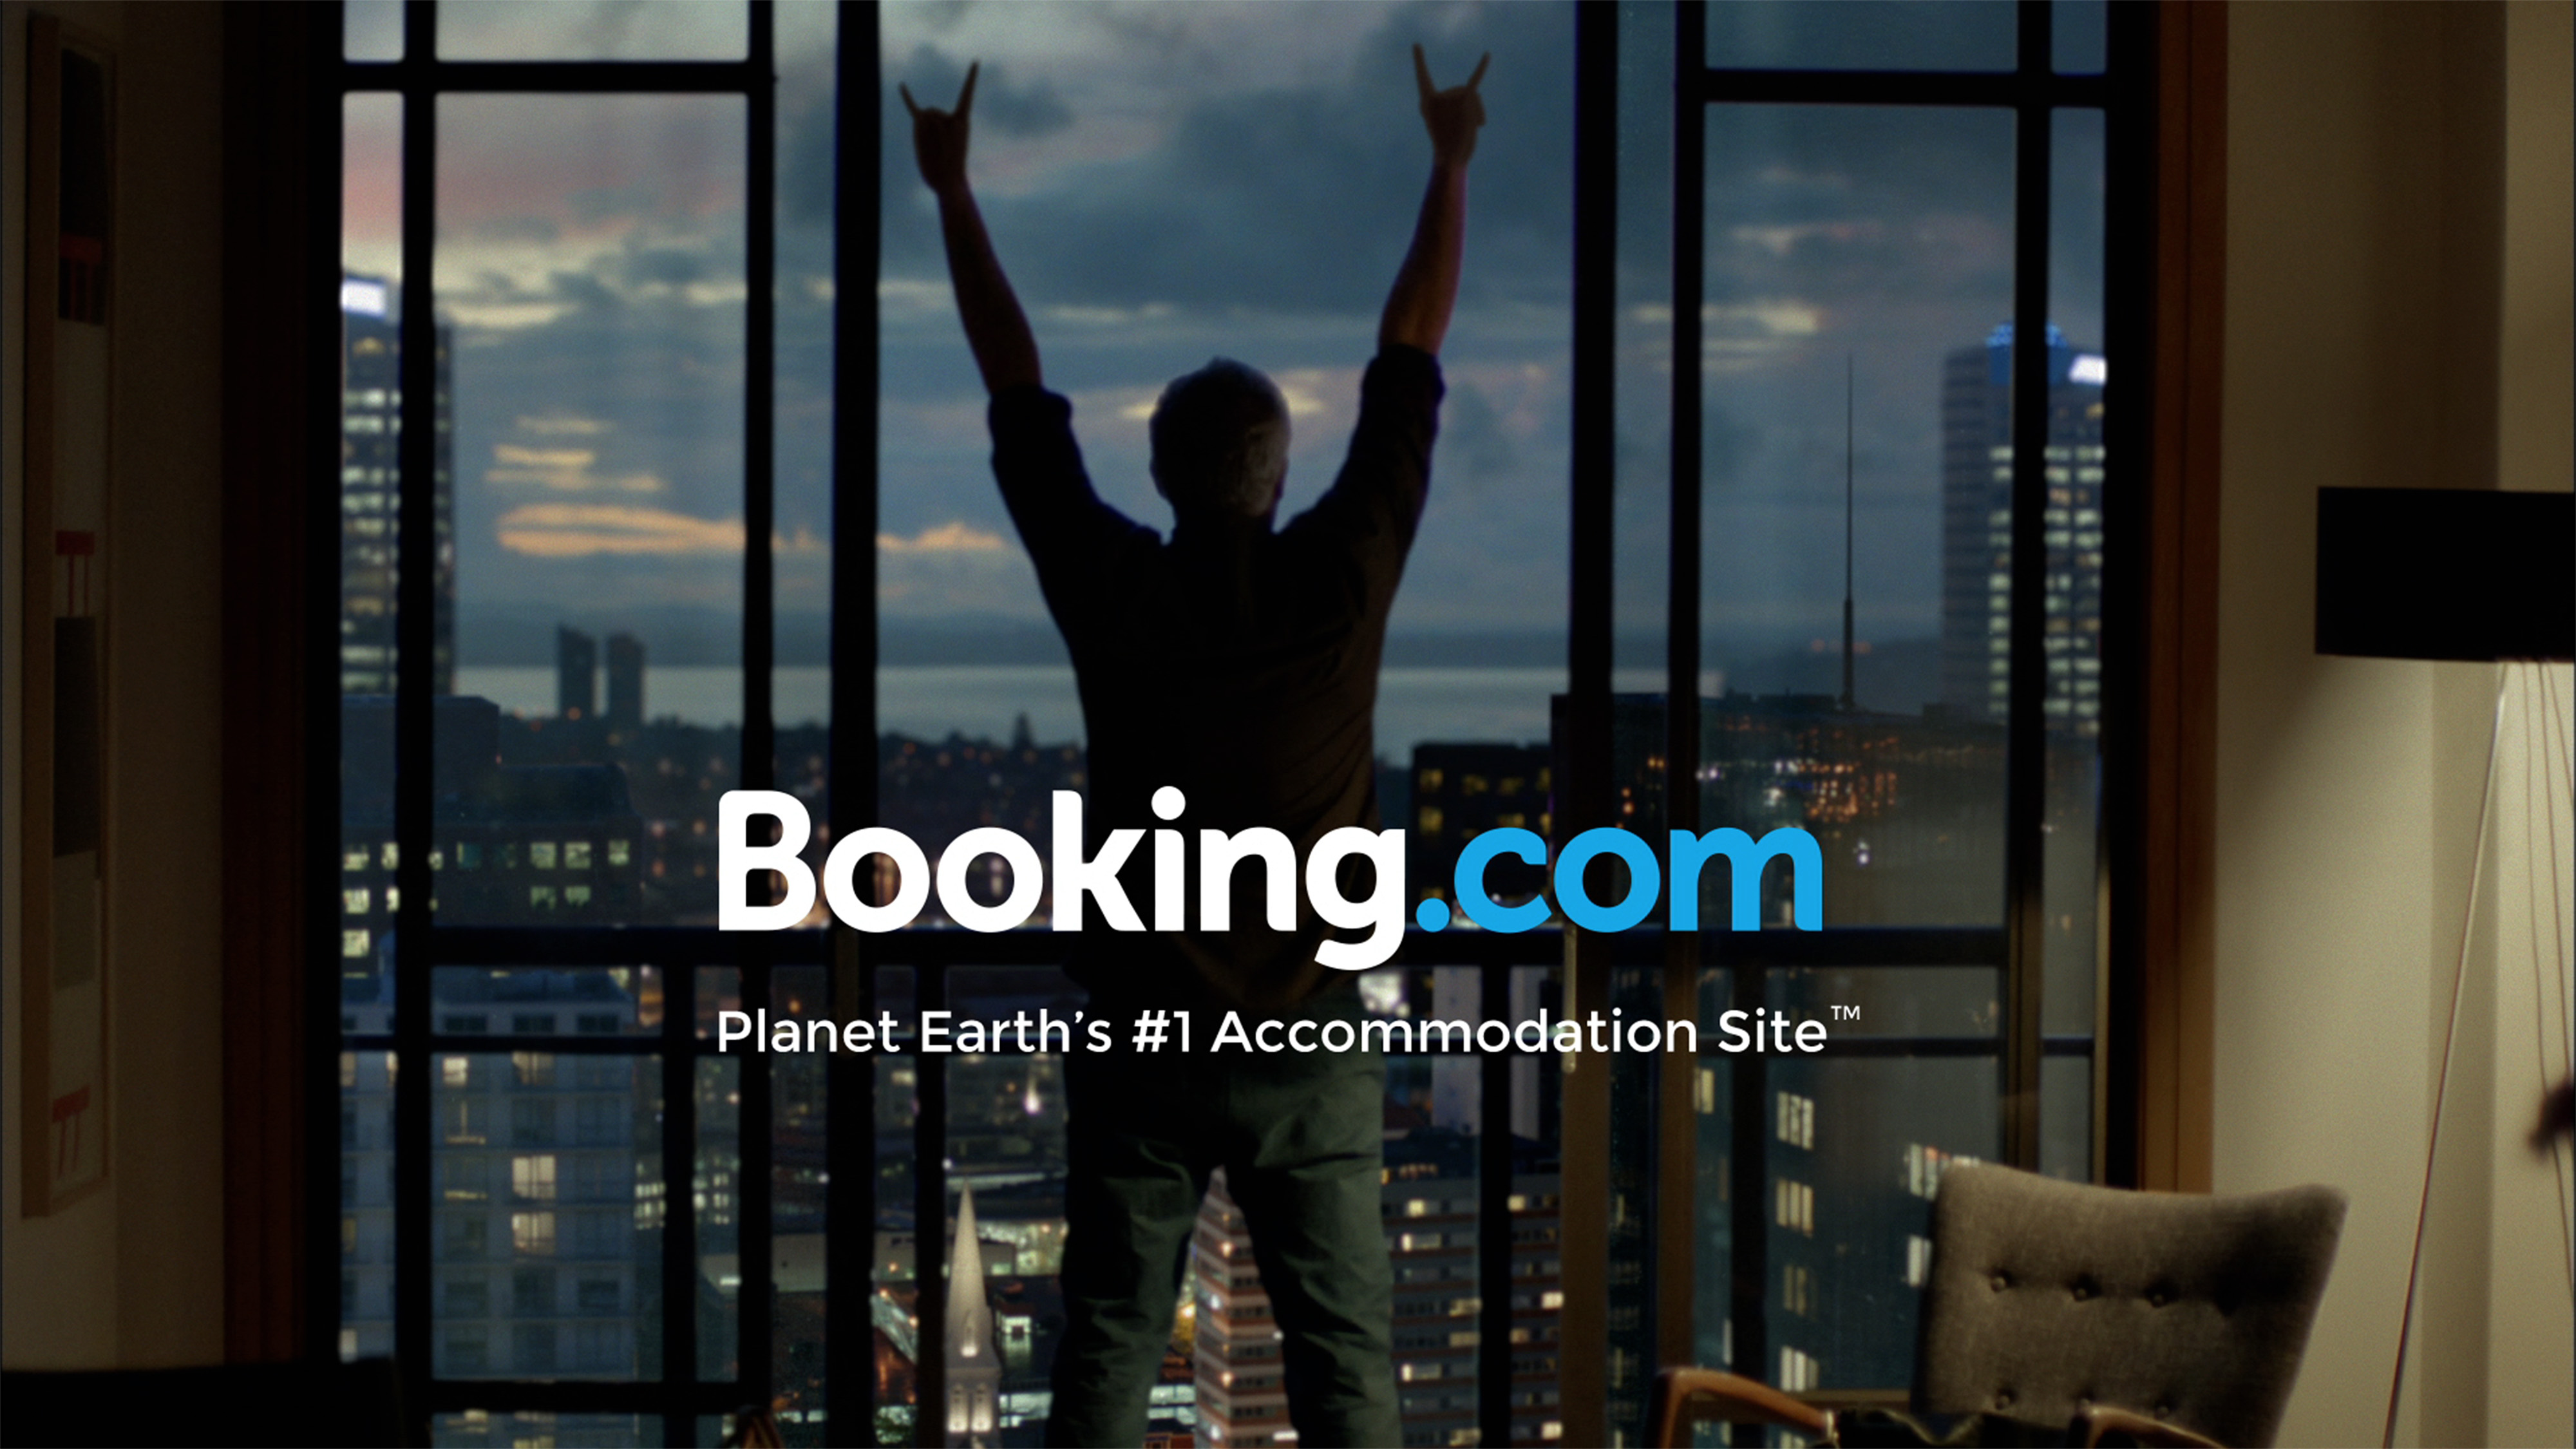 Booking.com peut bien faire de son nom une marque